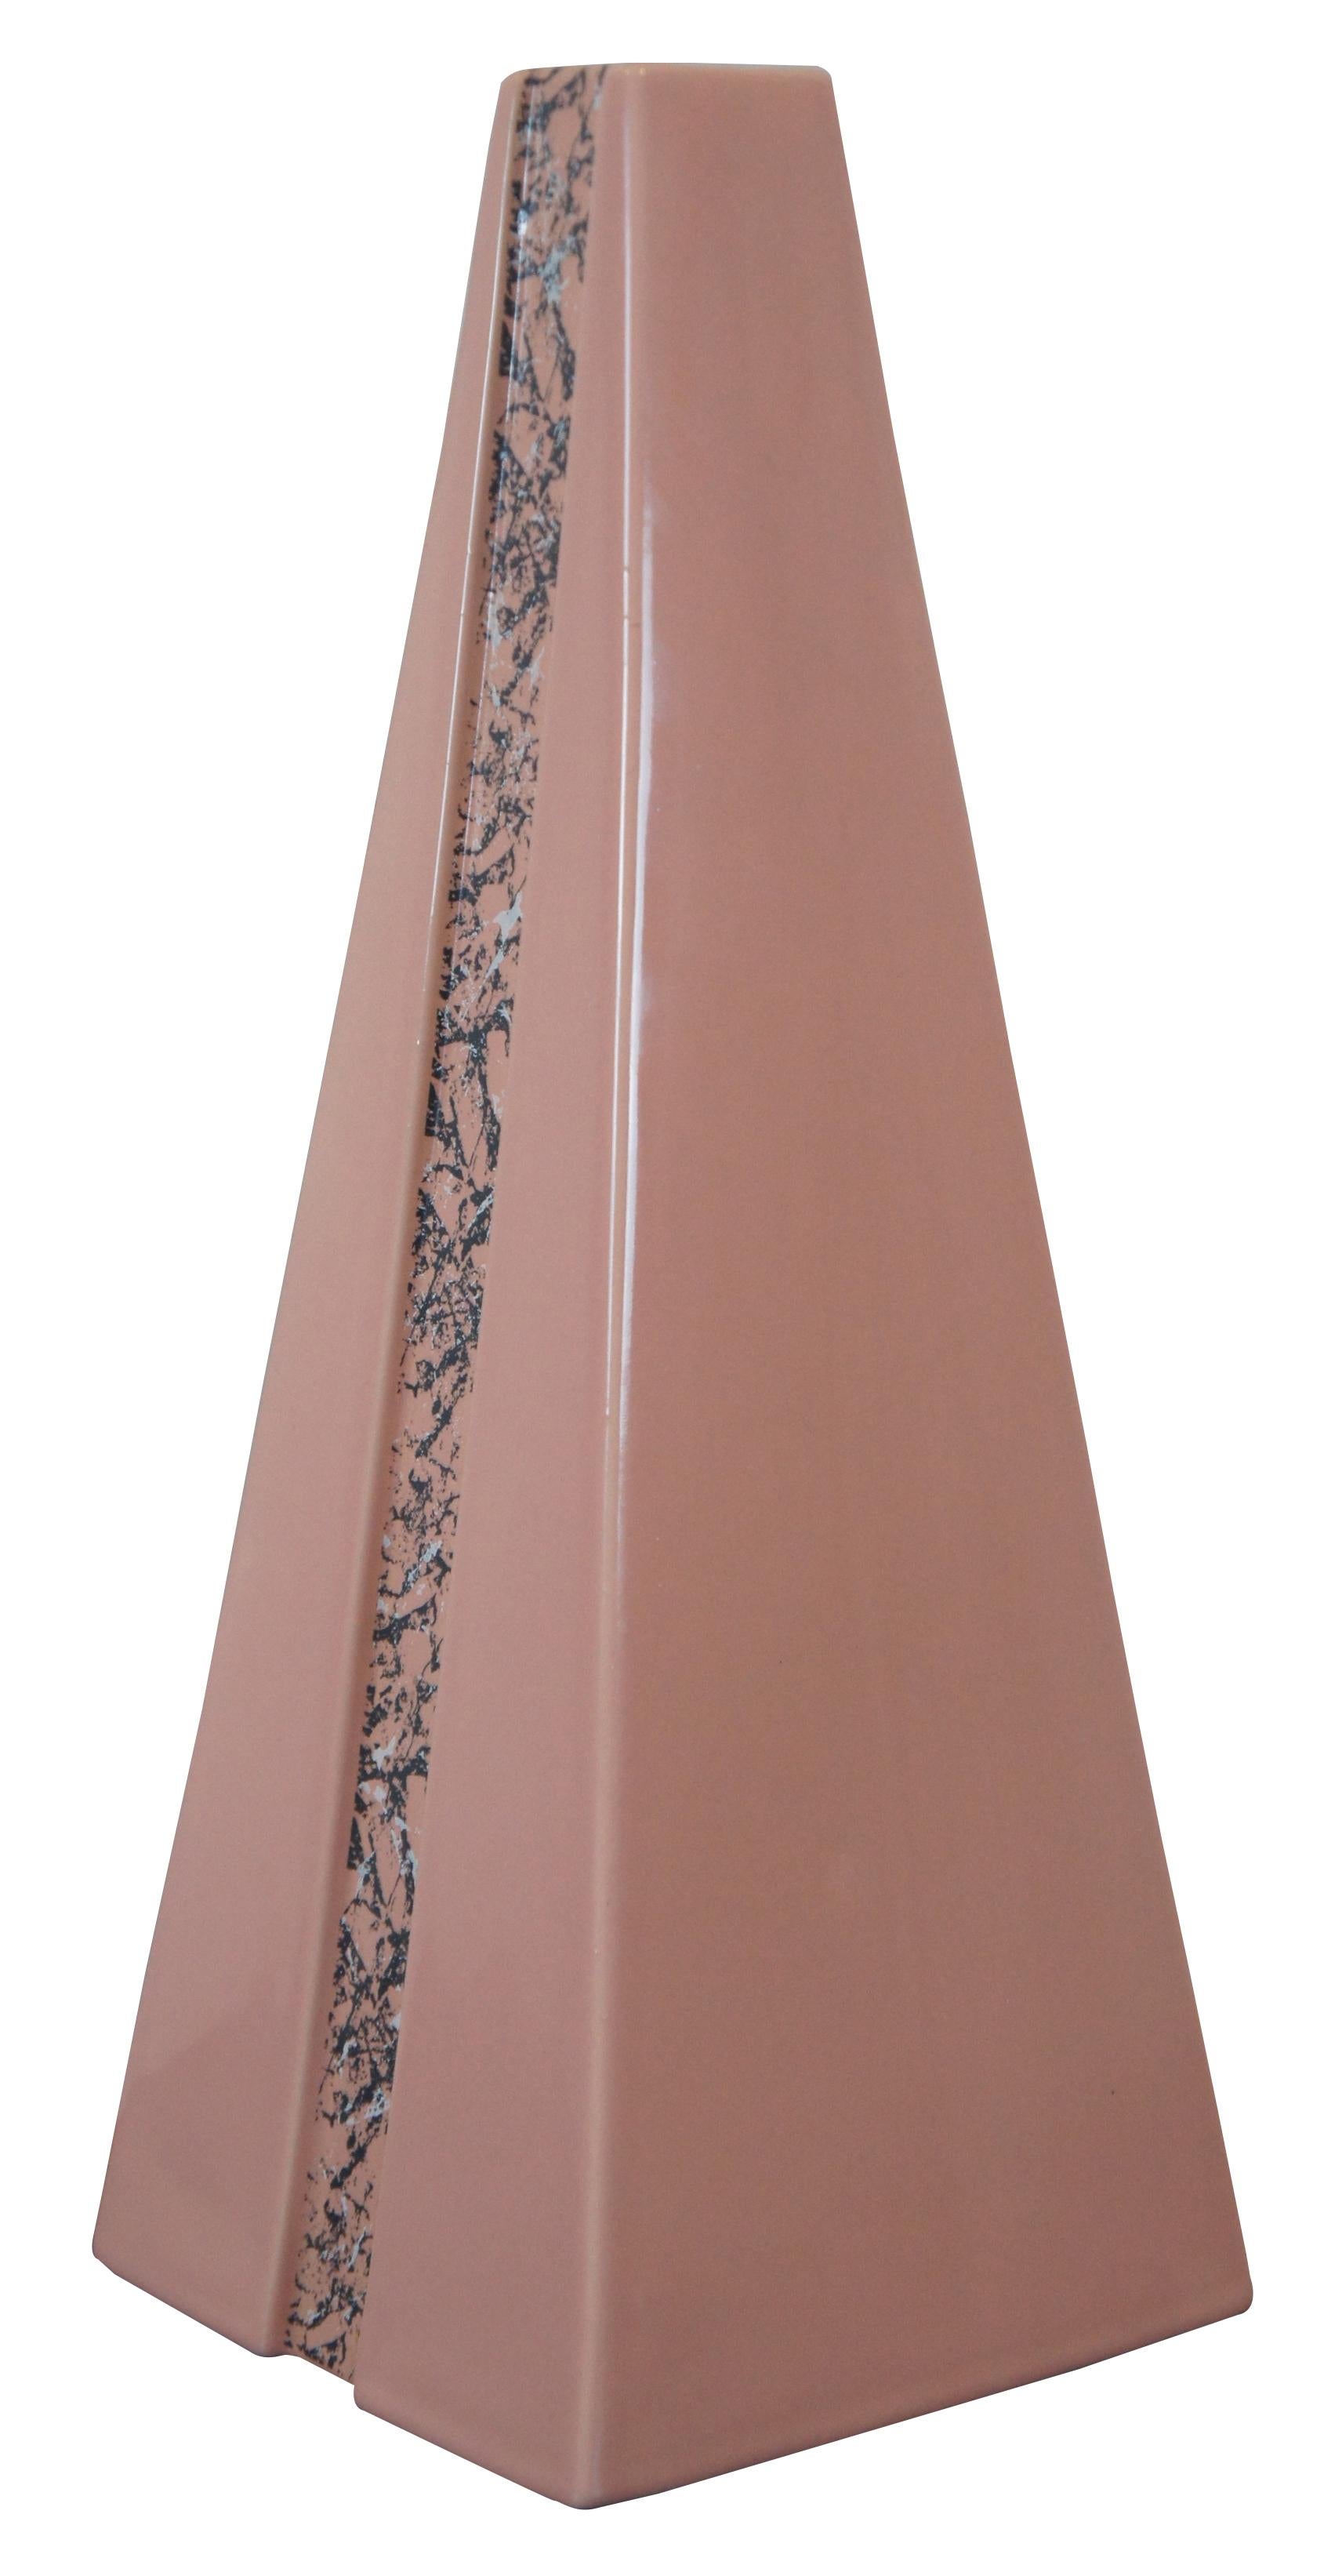 Haegar-Vase im Art-déco-Stil in Form einer hohen rosafarbenen Pyramide mit marmorierten Streifen entlang der Länge. Maße: 18